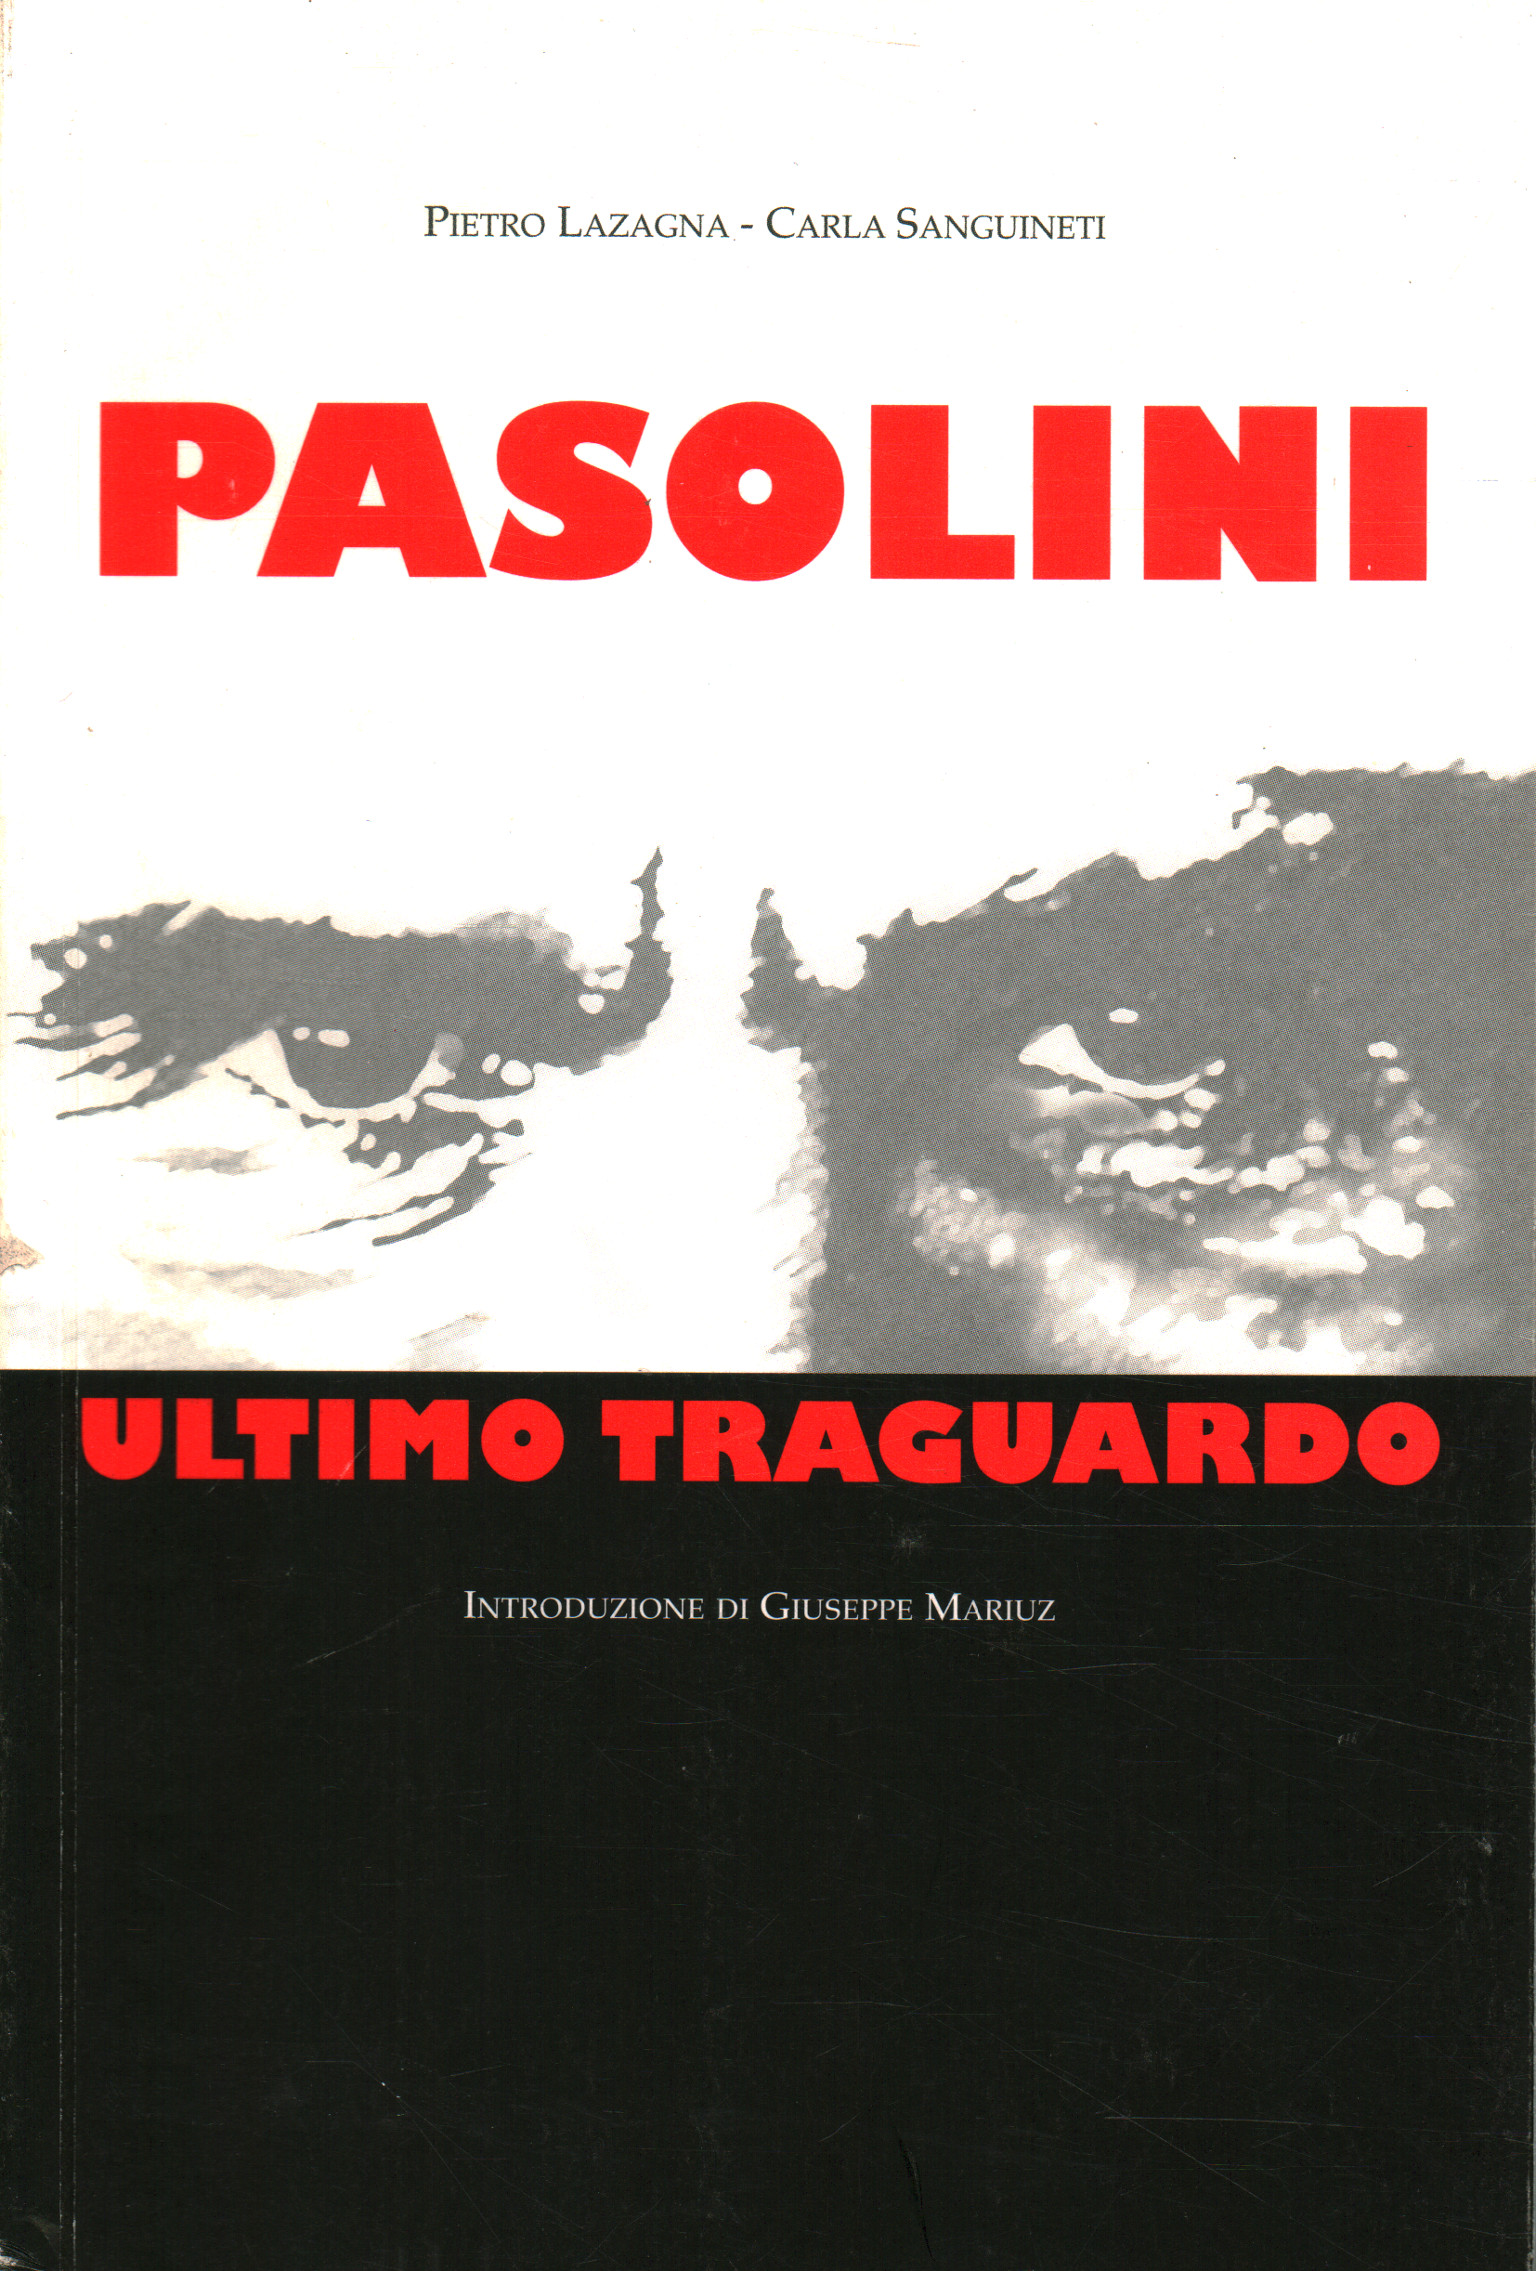 Pasolini last goal, Pietro Lazagna Carla Sanguineti